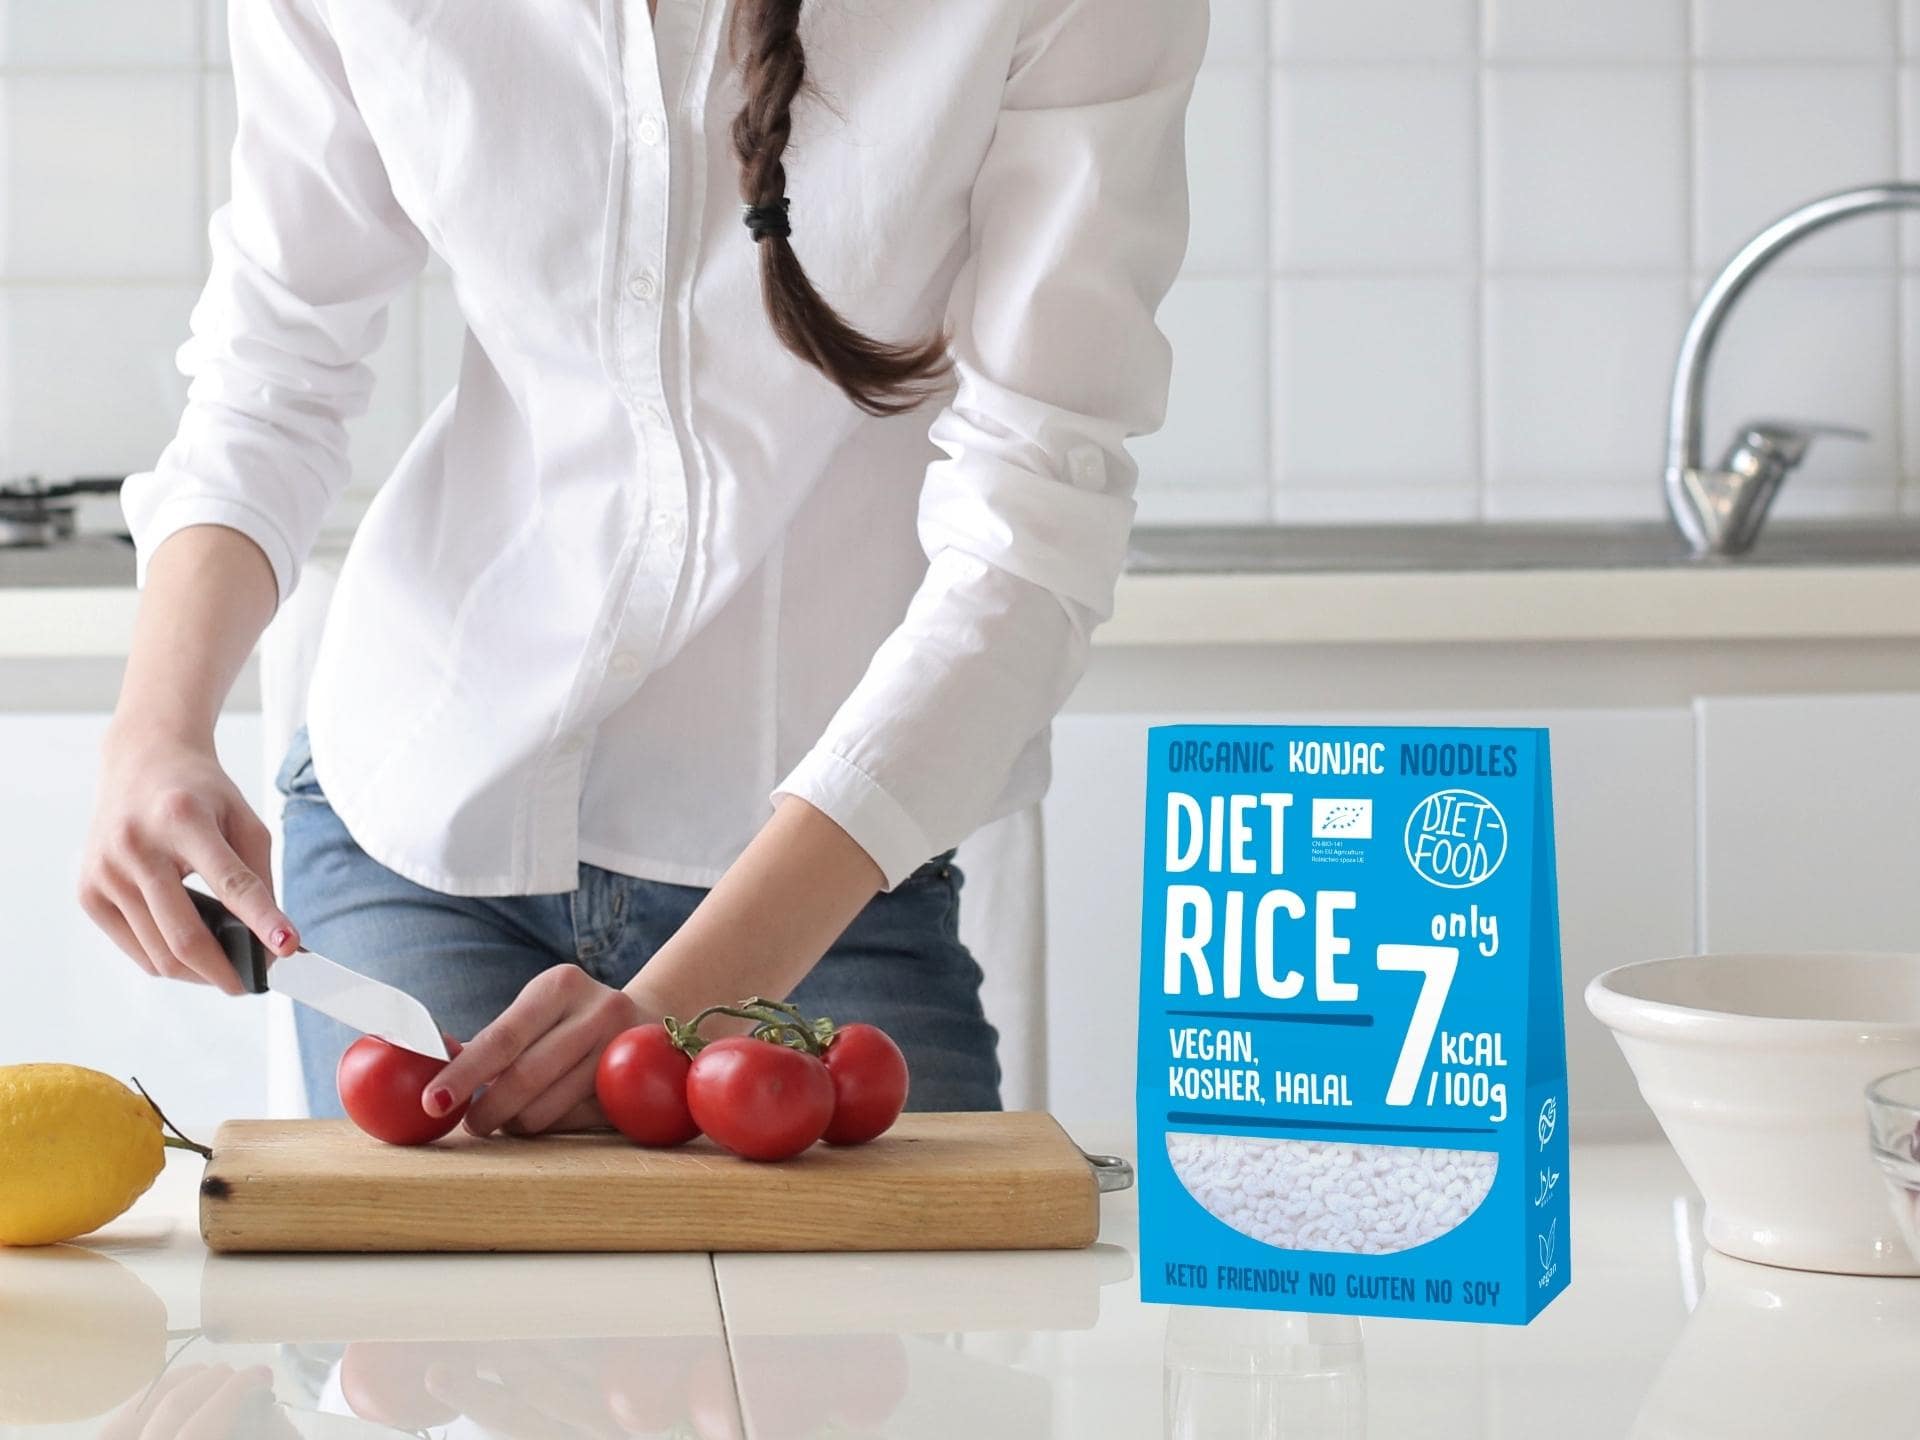 makaron ryż konjac dietetyczny 0 kcal